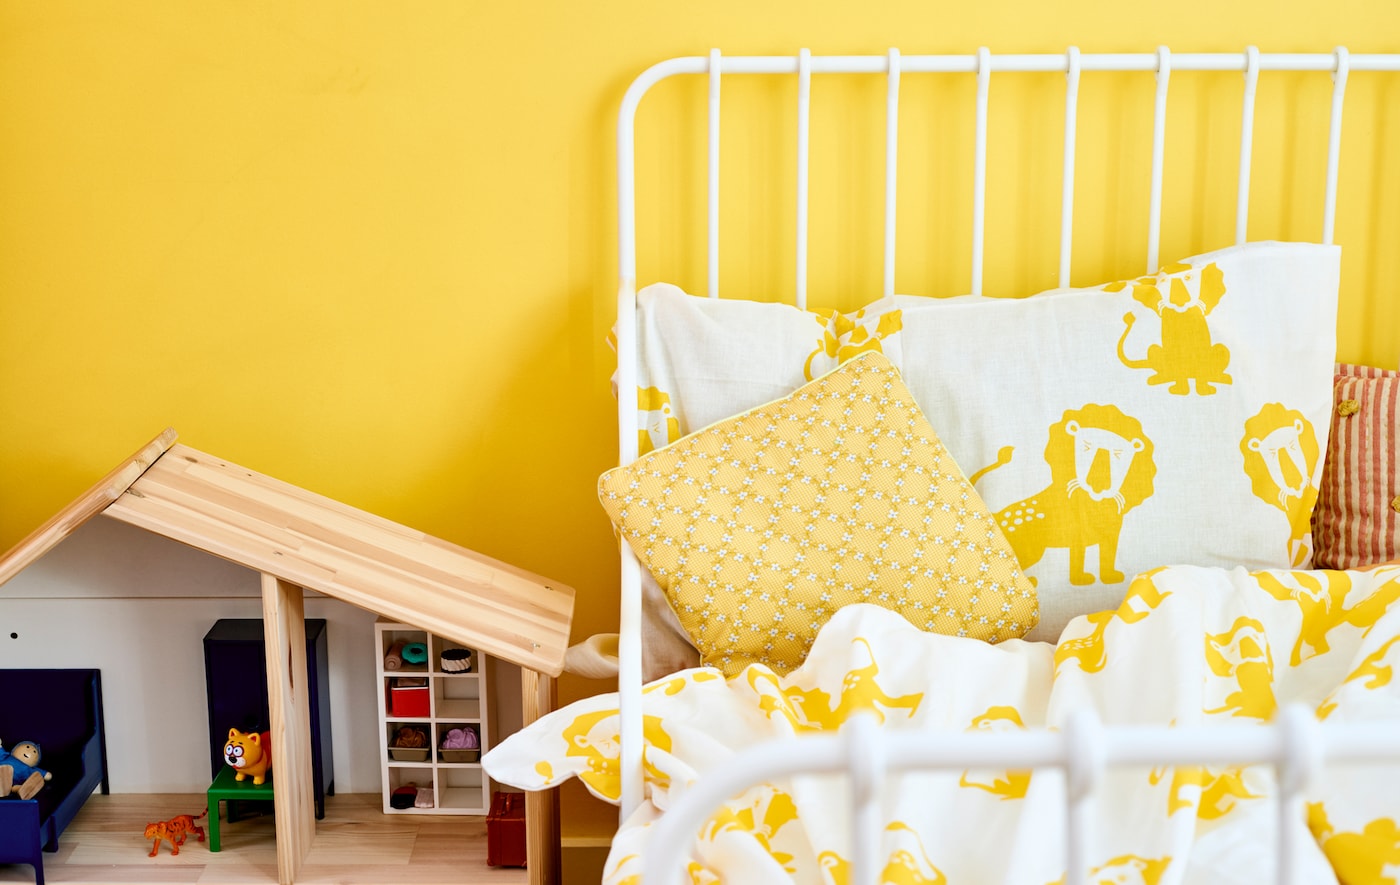 白色床框架与黄色和白色狮子印刷层理与黄色的墙,旁边一个木制娃娃的房子。